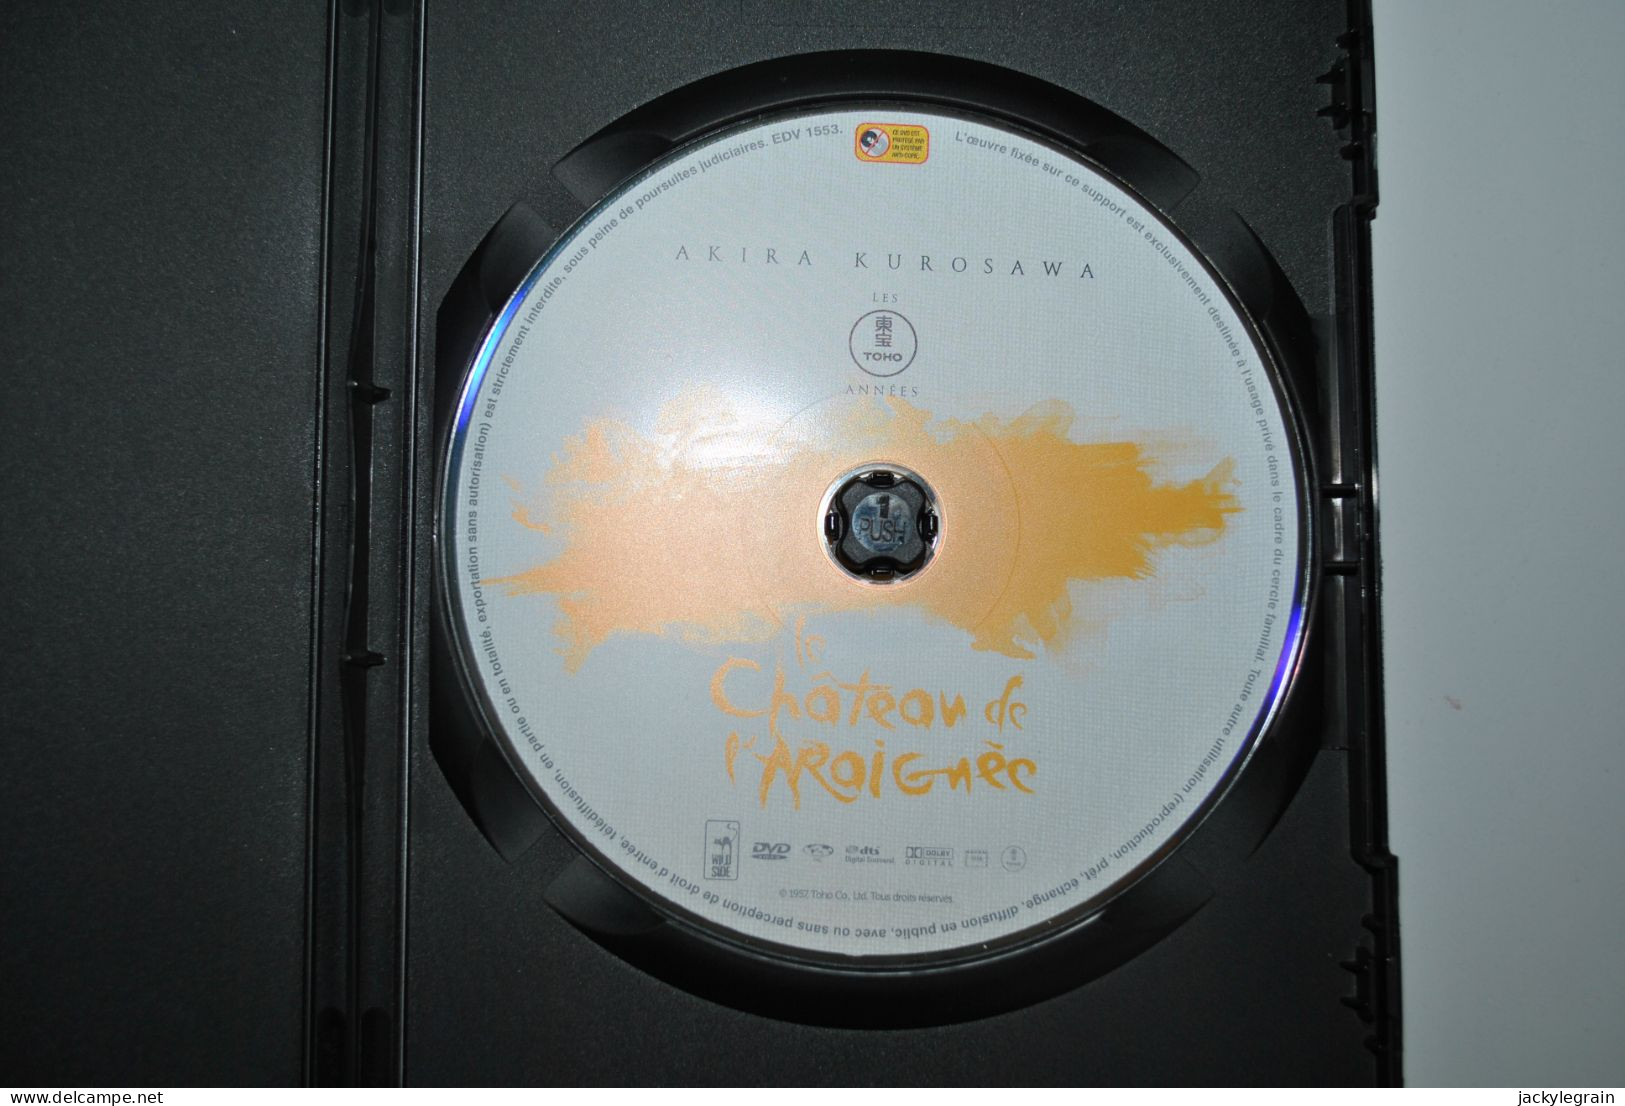 DVD "Chateau Araignée"/Kurosawa Langues Japonais/français Comme Neuf Vente En Belgique Uniquement Envoi Bpost 3 € - Classic